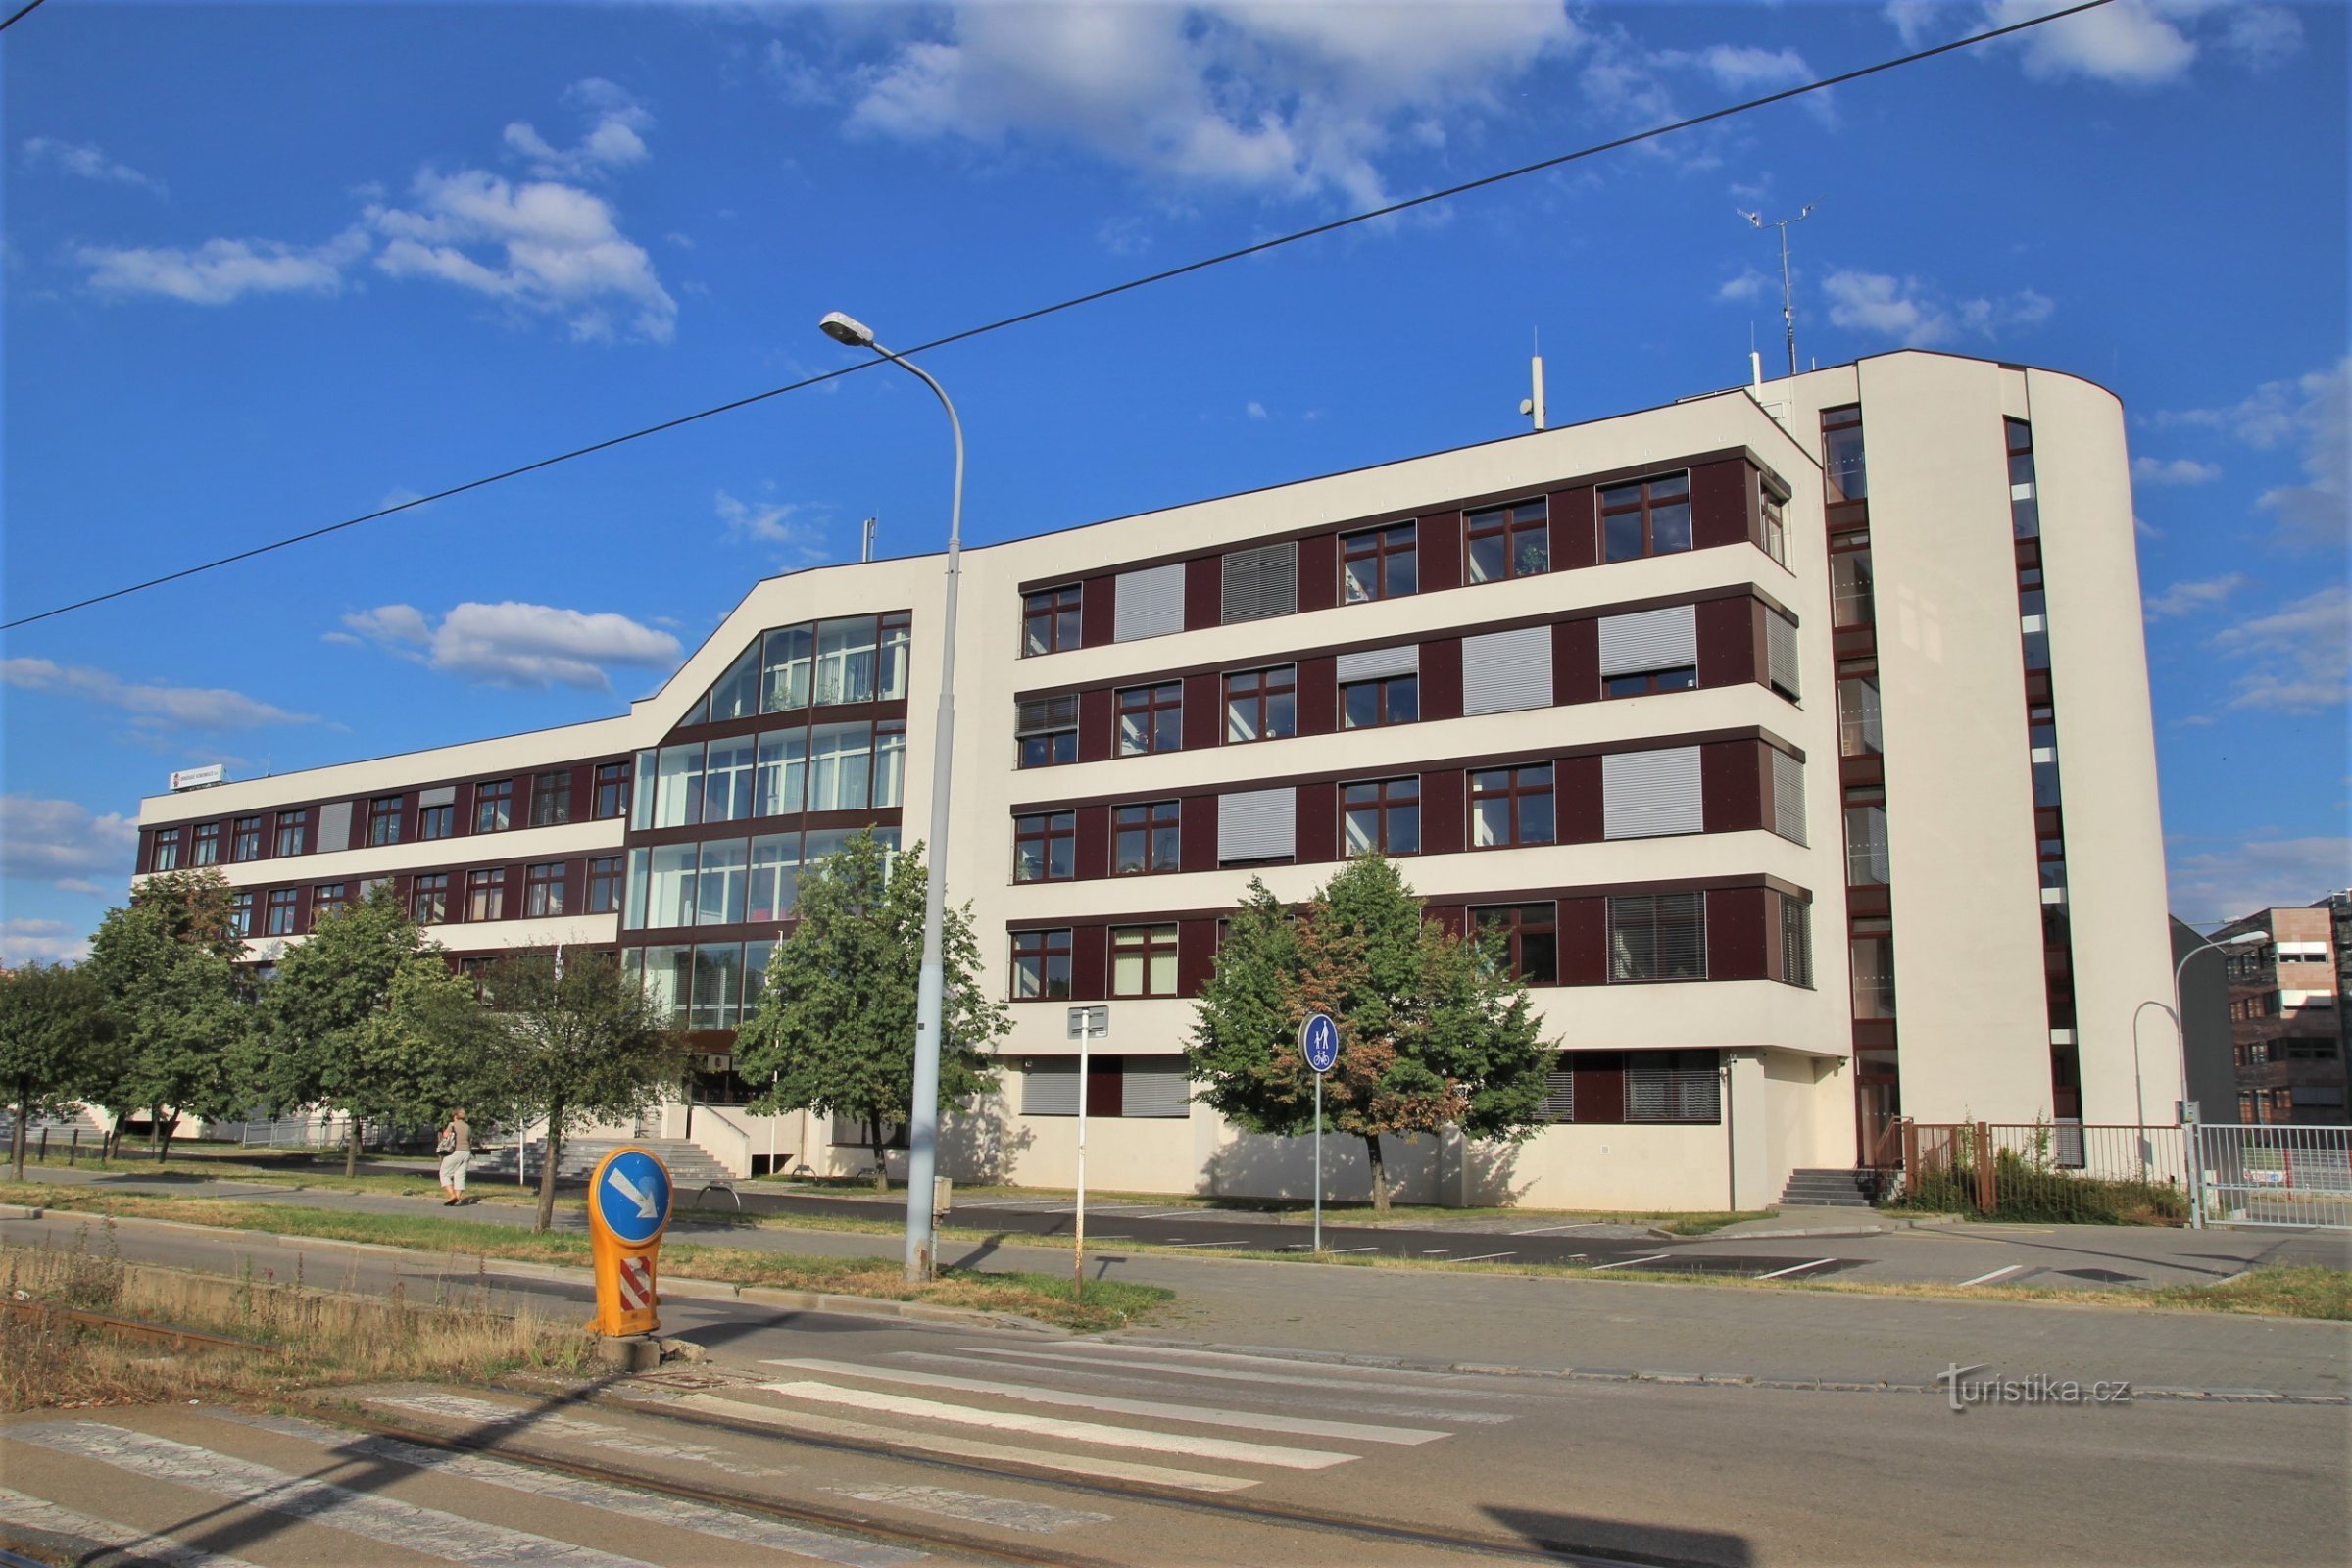 Brno kommunikationsbygning